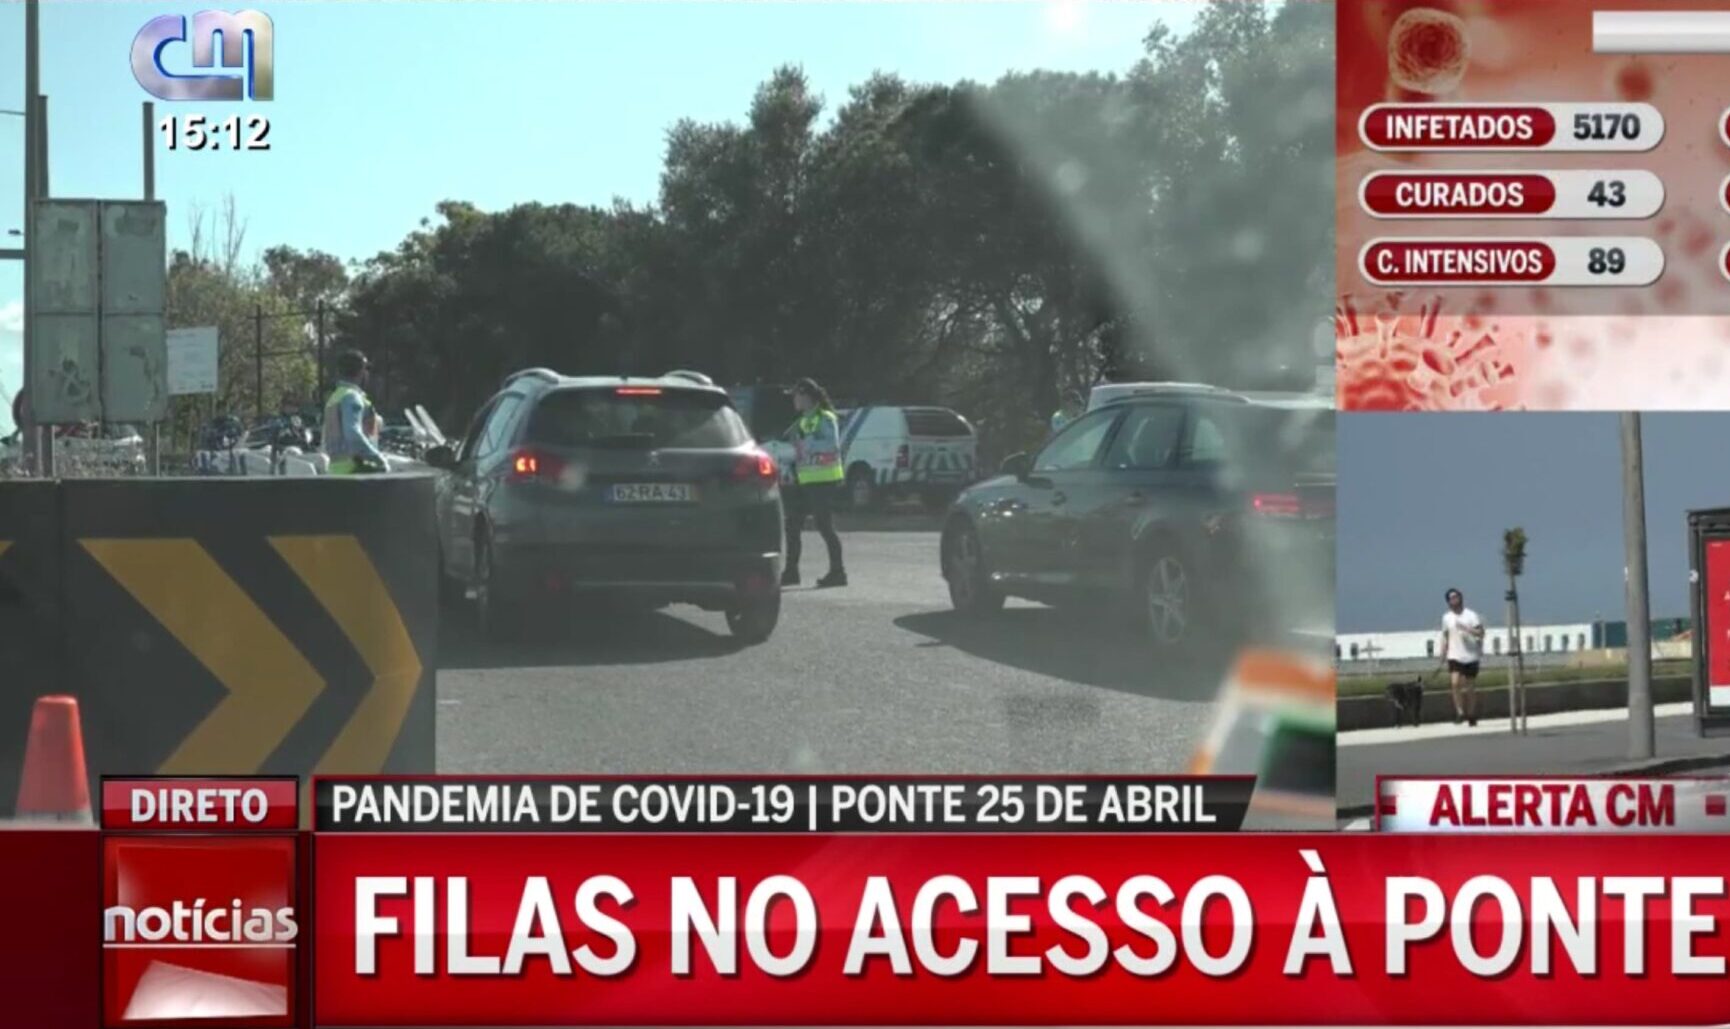 ponte 25 de abril scaled e1585413020349 Jornalista da RTP incrédula com atitude dos portugueses: "Entupir a Ponte 25 de Abril com filas"